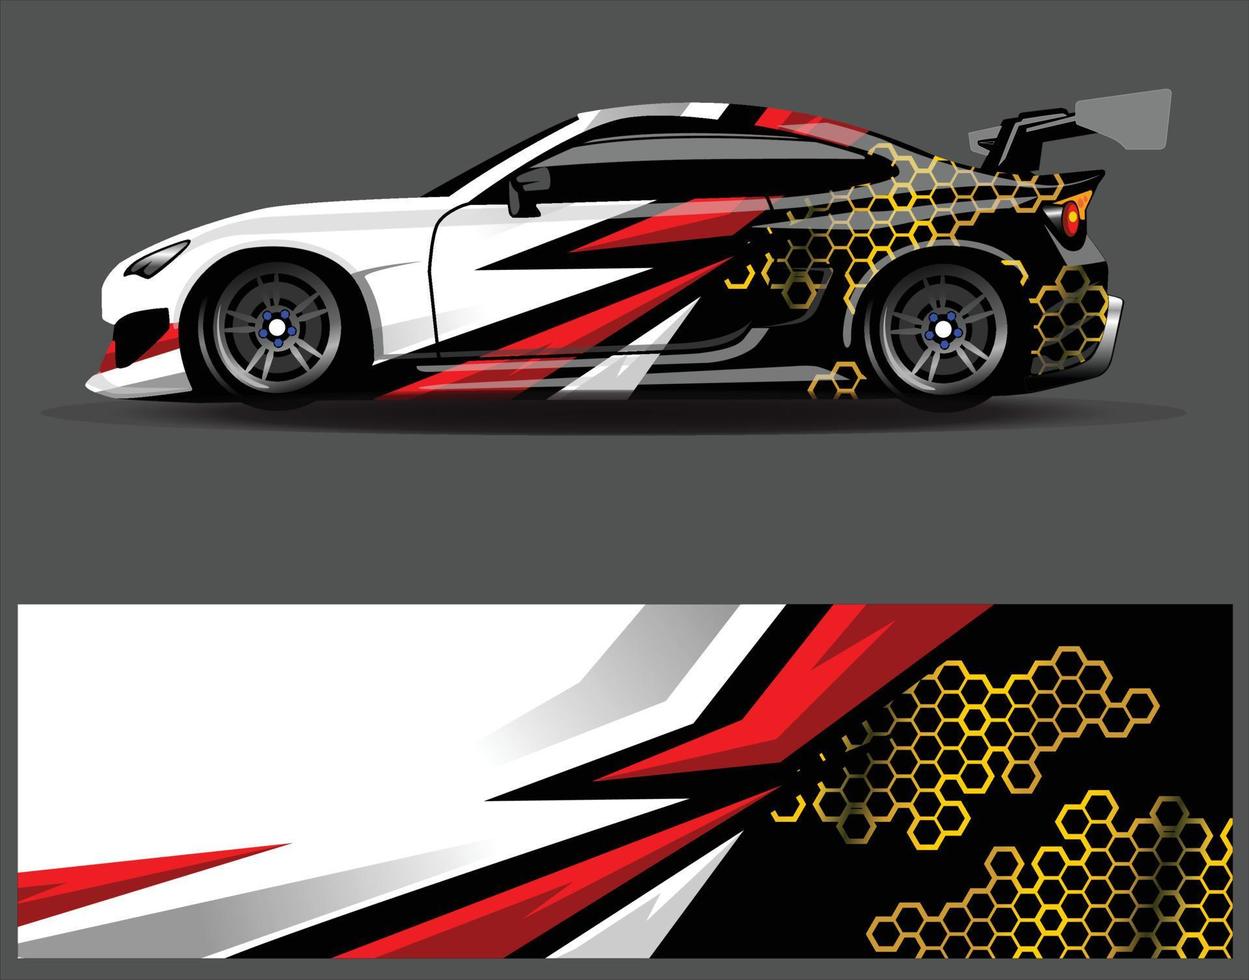 grafische abstracte streep race-achtergrondontwerpen voor voertuig rally race-avontuur en autorace-livrei vector